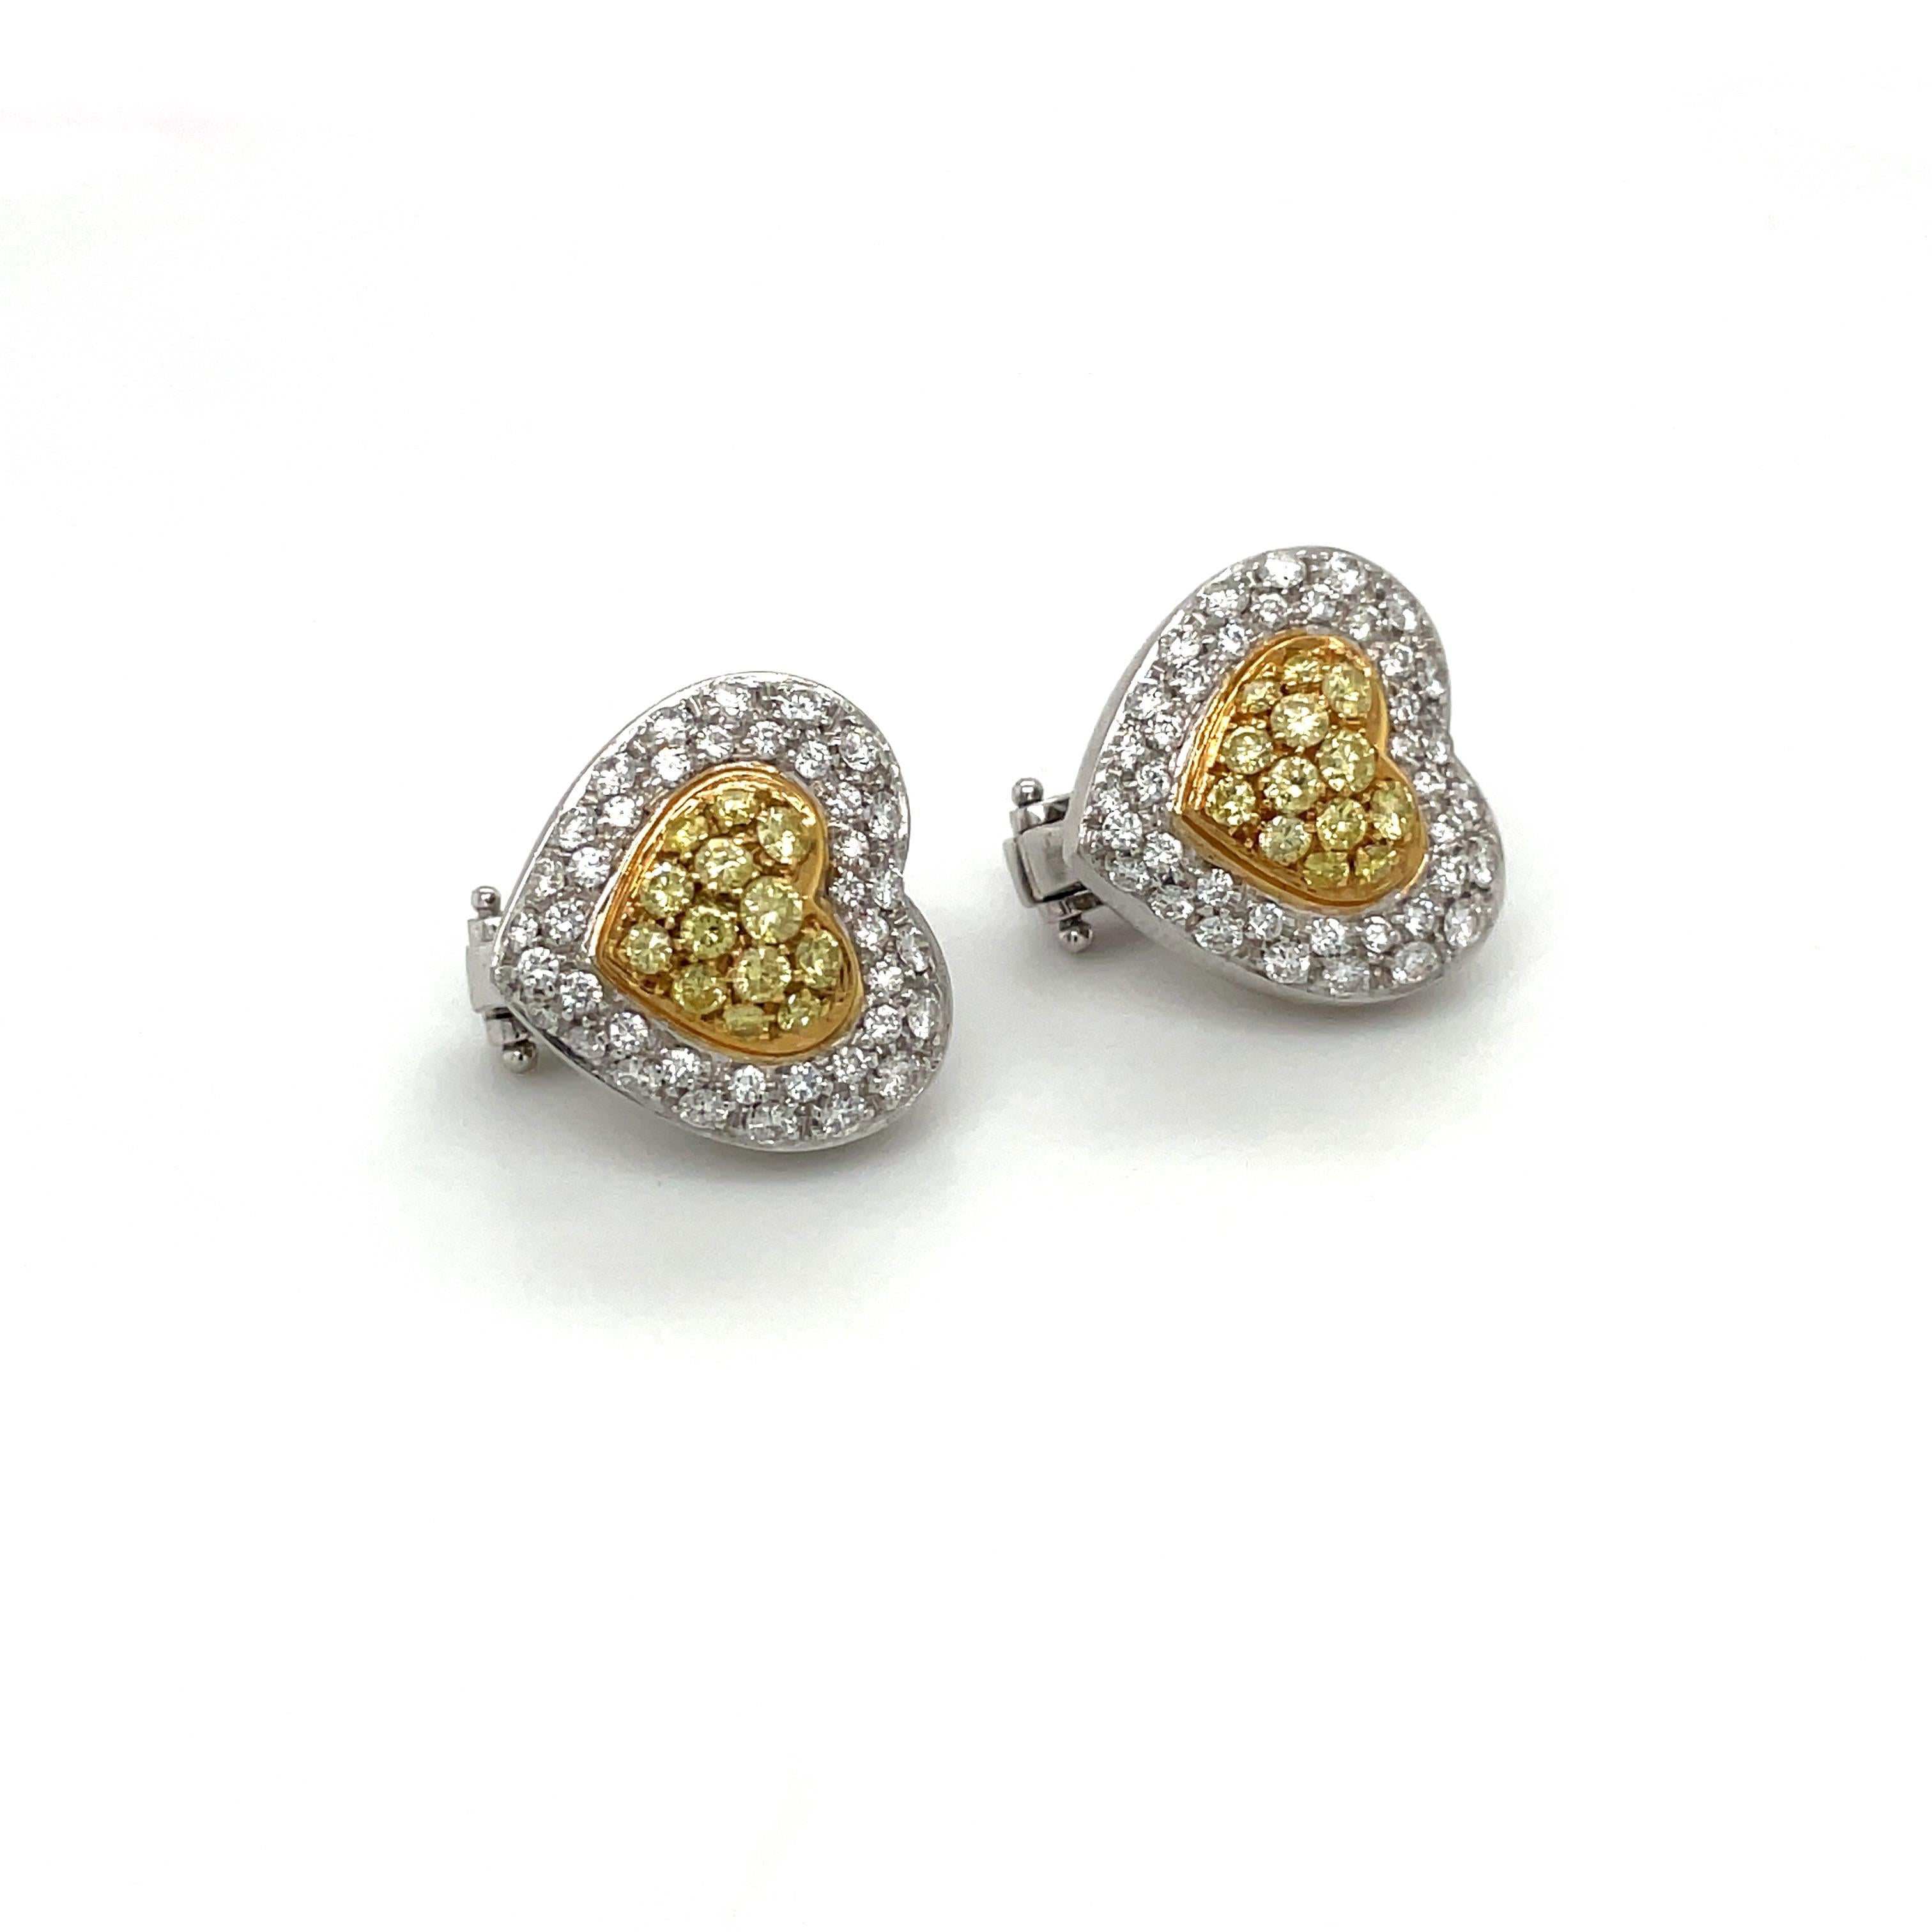 yellow diamond heart earrings